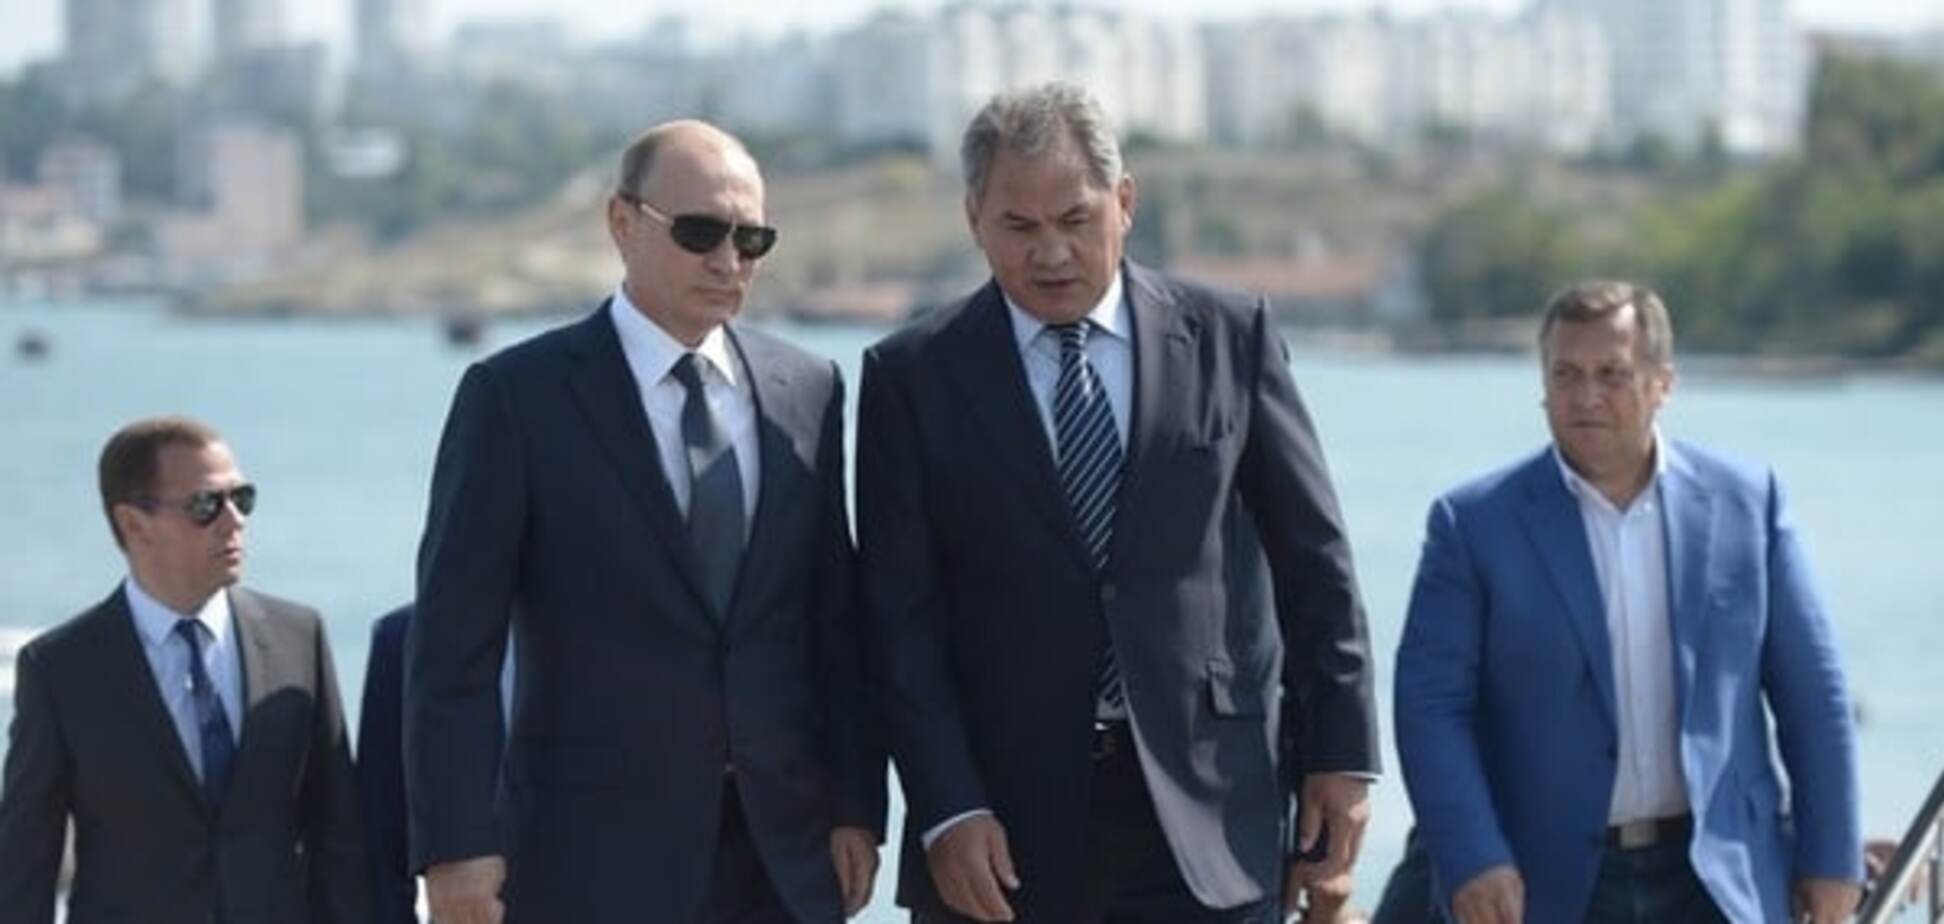 Портников: украв Крым, Путин поставил Россию перед непростой дилеммой